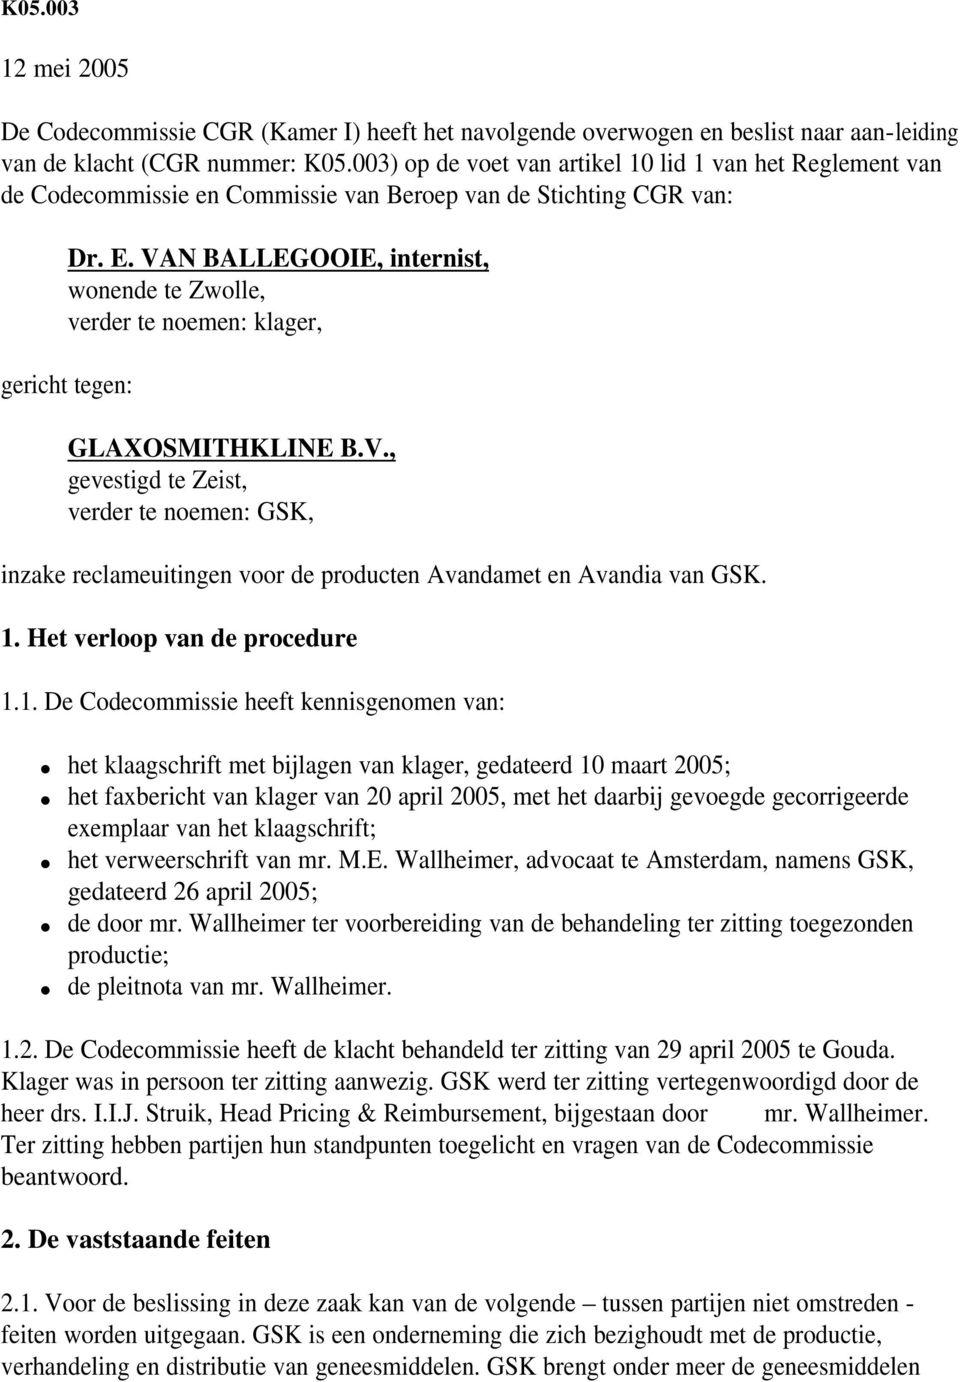 VAN BALLEGOOIE, internist, wonende te Zwolle, verder te noemen: klager, gericht tegen: GLAXOSMITHKLINE B.V., gevestigd te Zeist, verder te noemen: GSK, inzake reclameuitingen voor de producten Avandamet en Avandia van GSK.